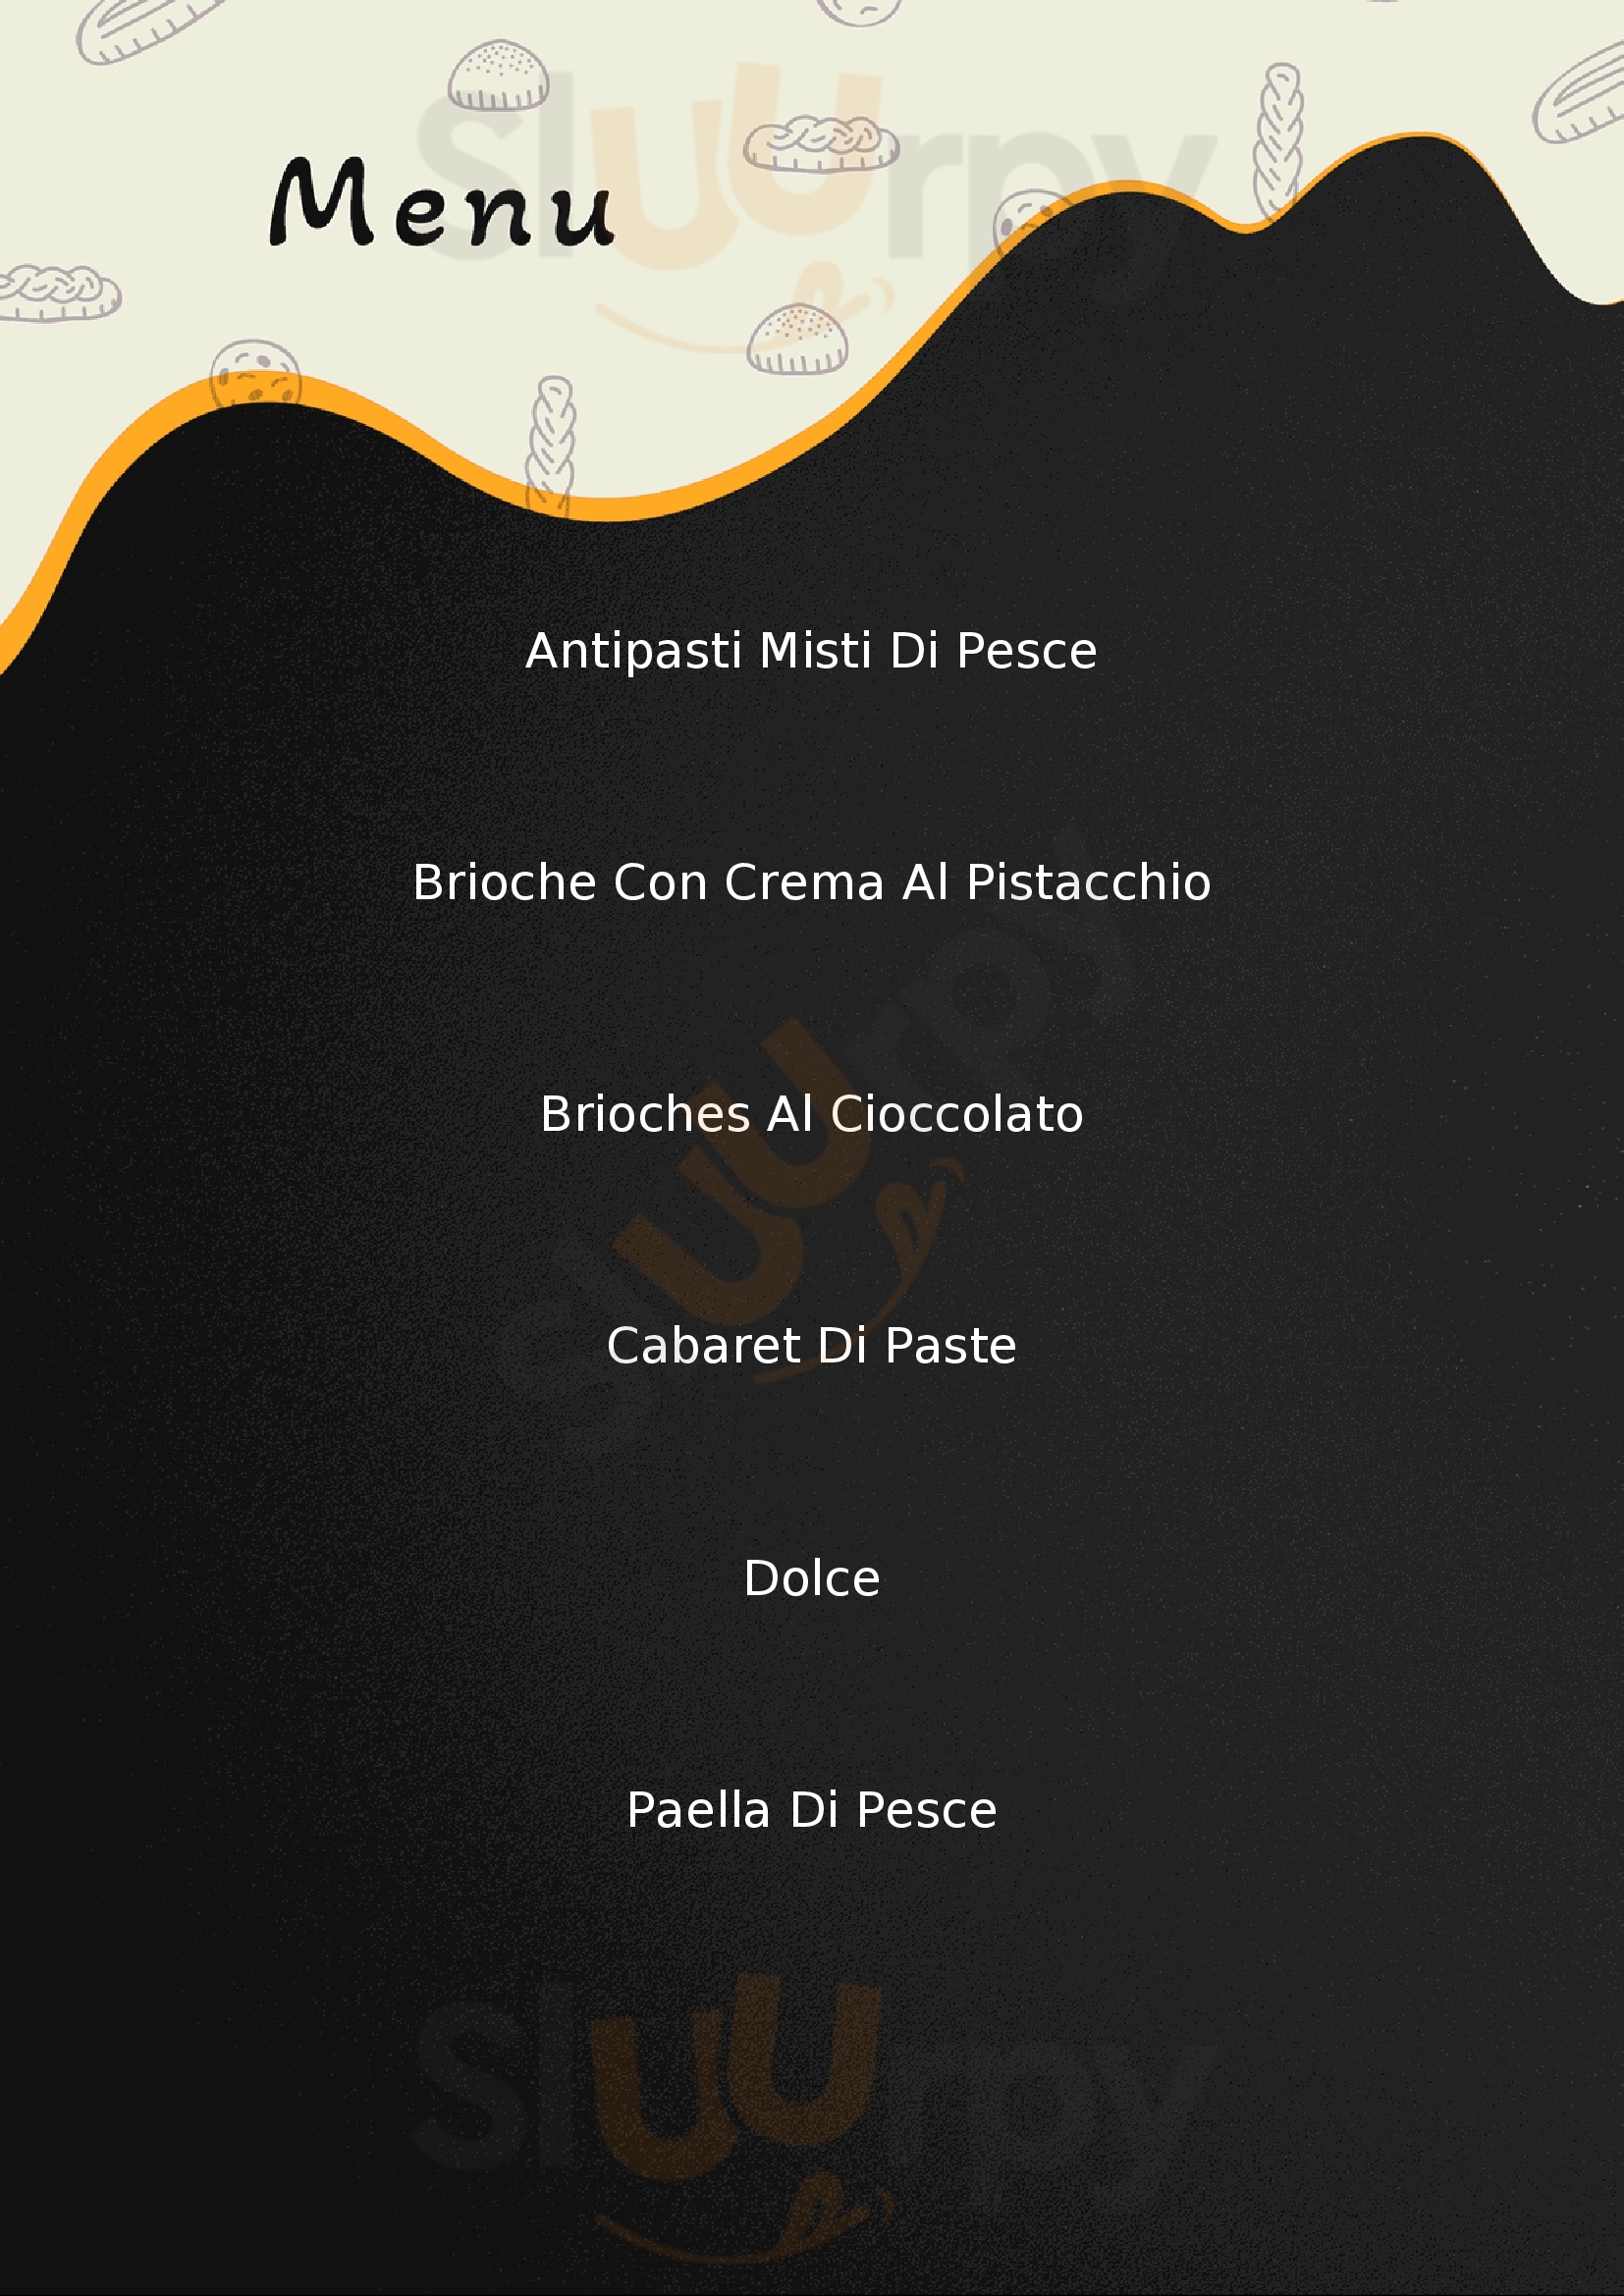 Gruppo Marchioro Catering | Pizzeria | Ristorante | Pasticceria Vigonza menù 1 pagina